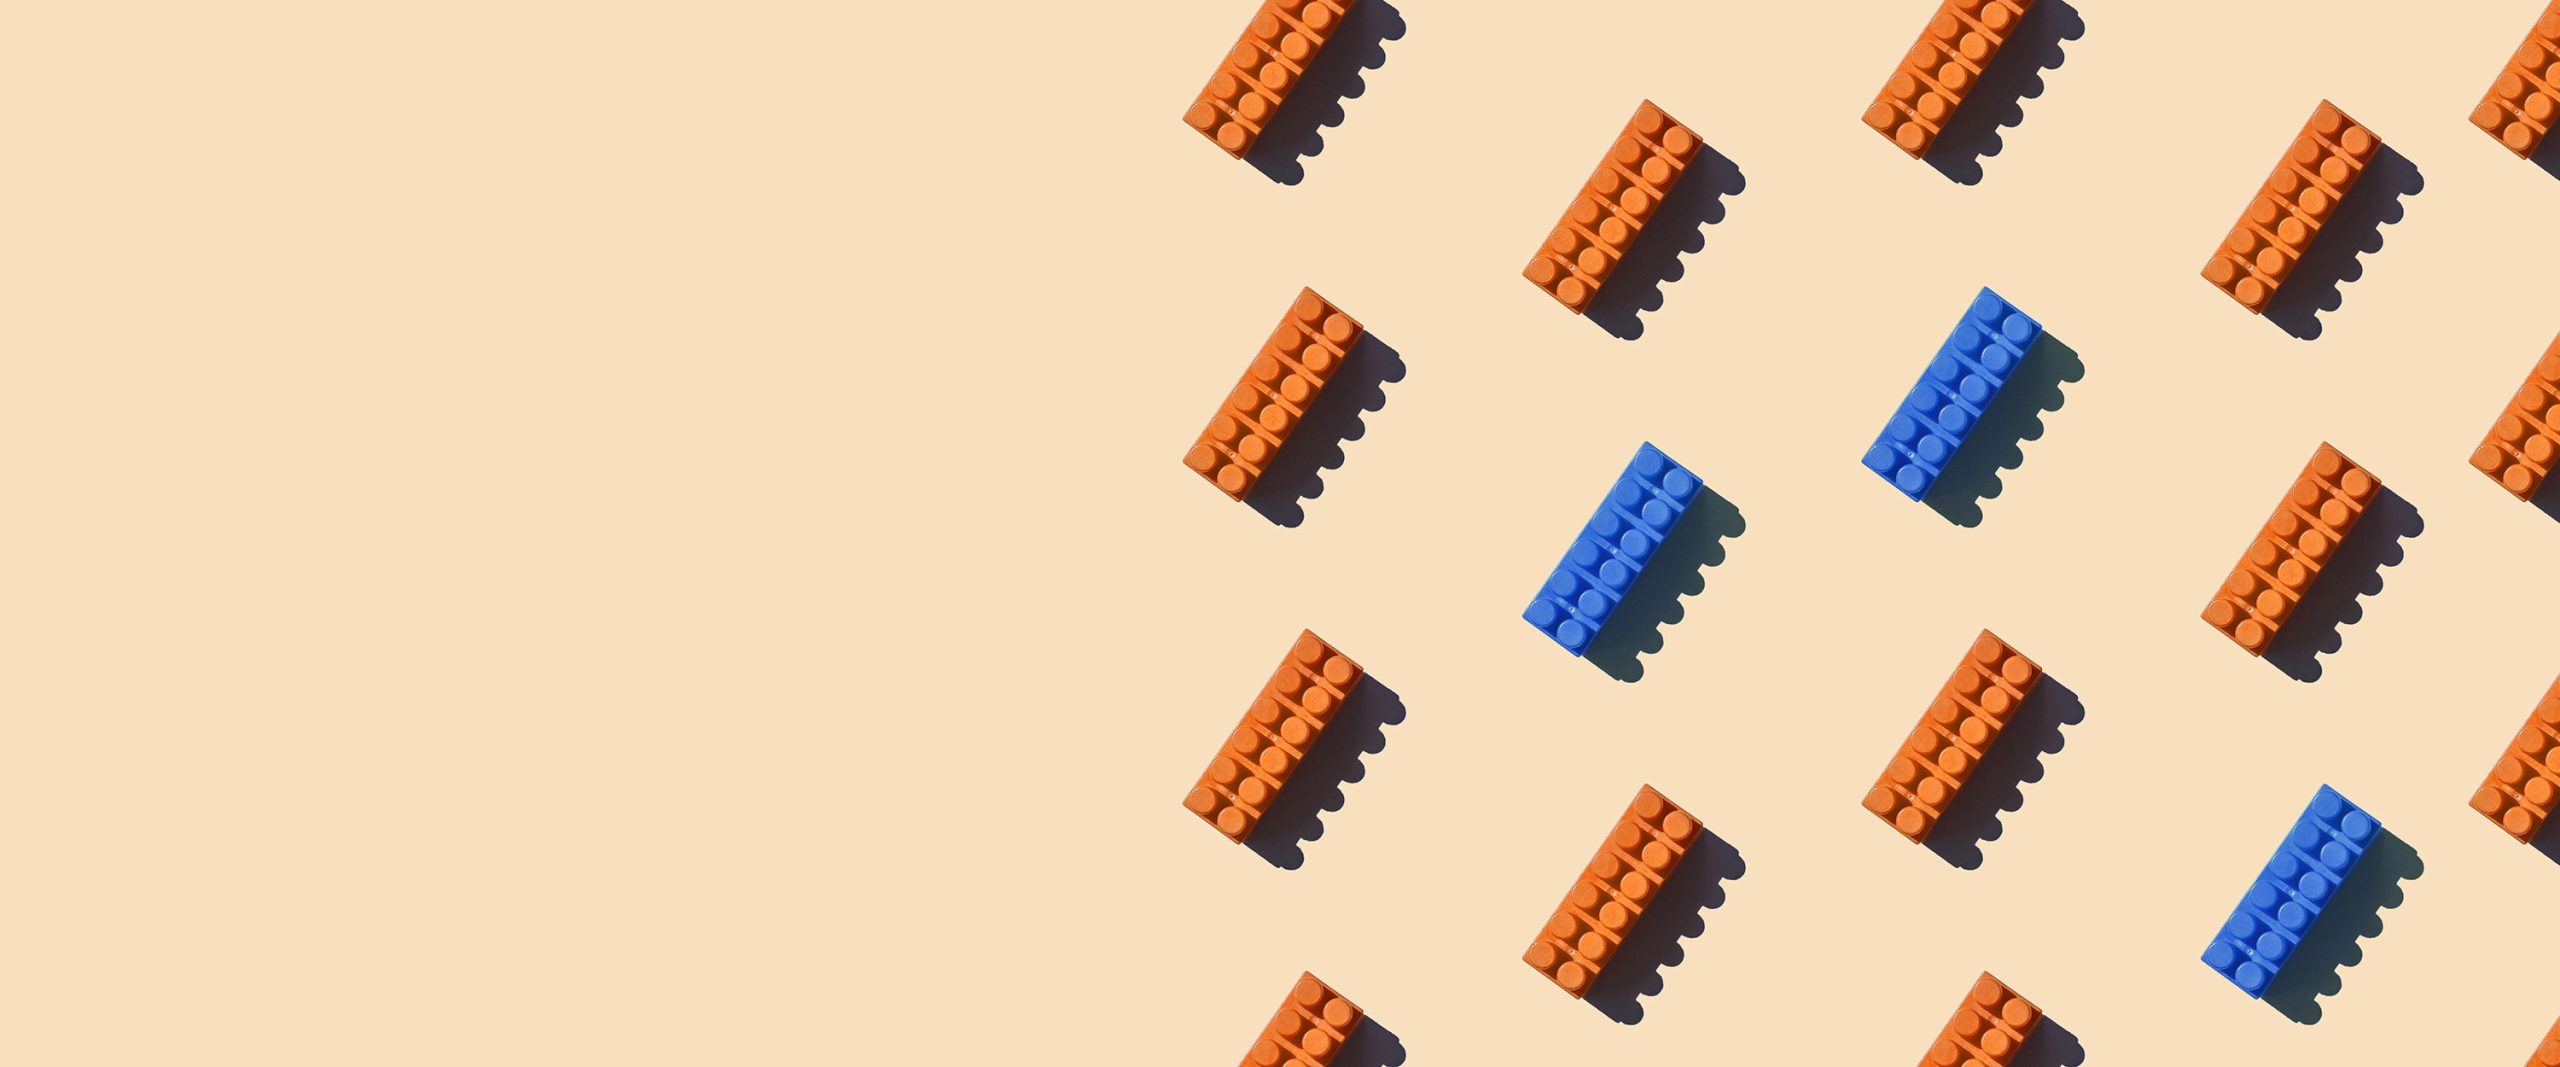 Orange and blue lego bricks